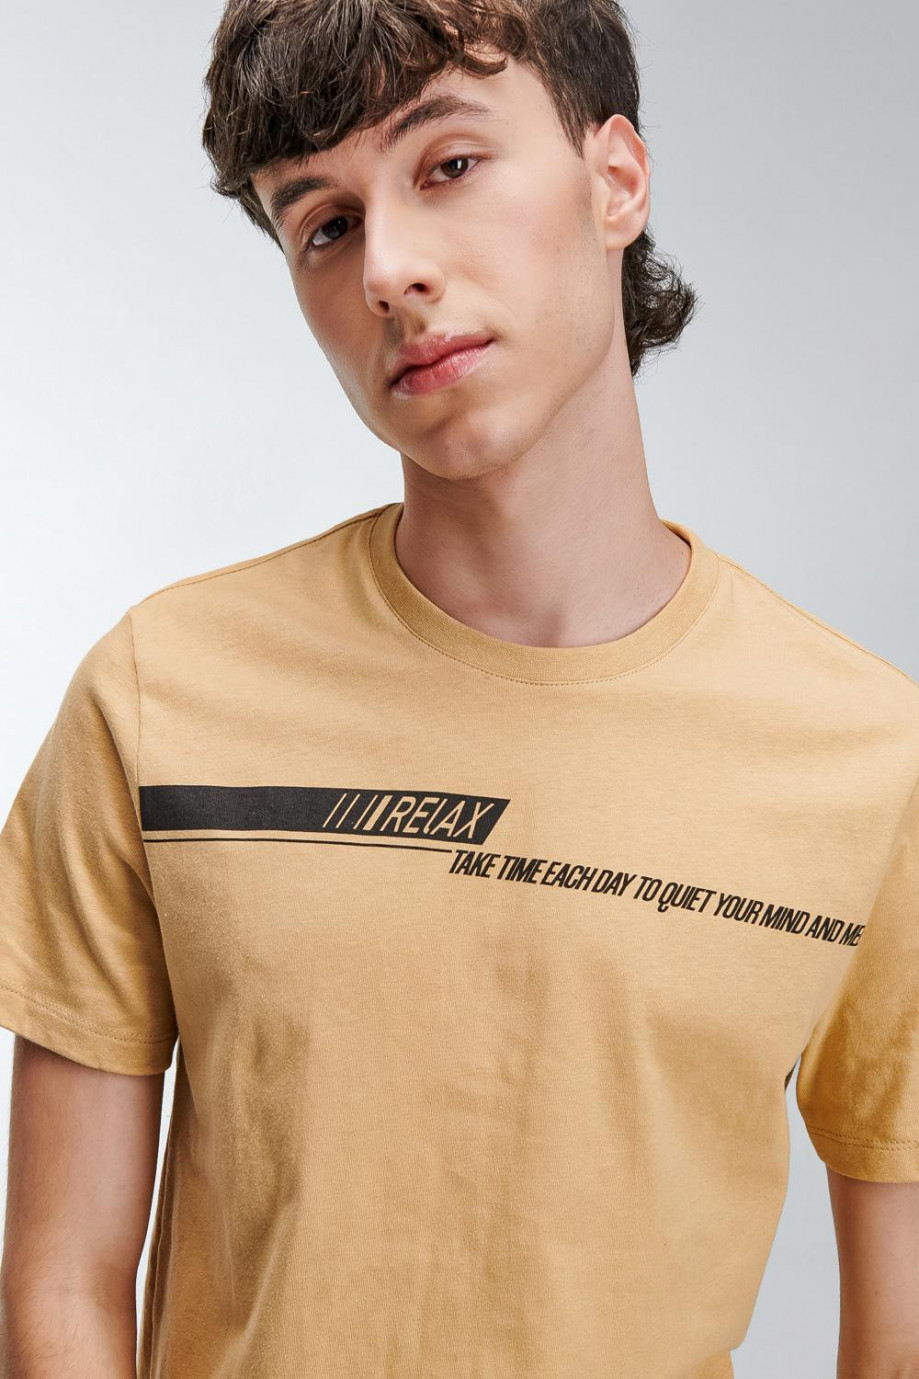 Camiseta cuello redondo unicolor con estampado de letras negras